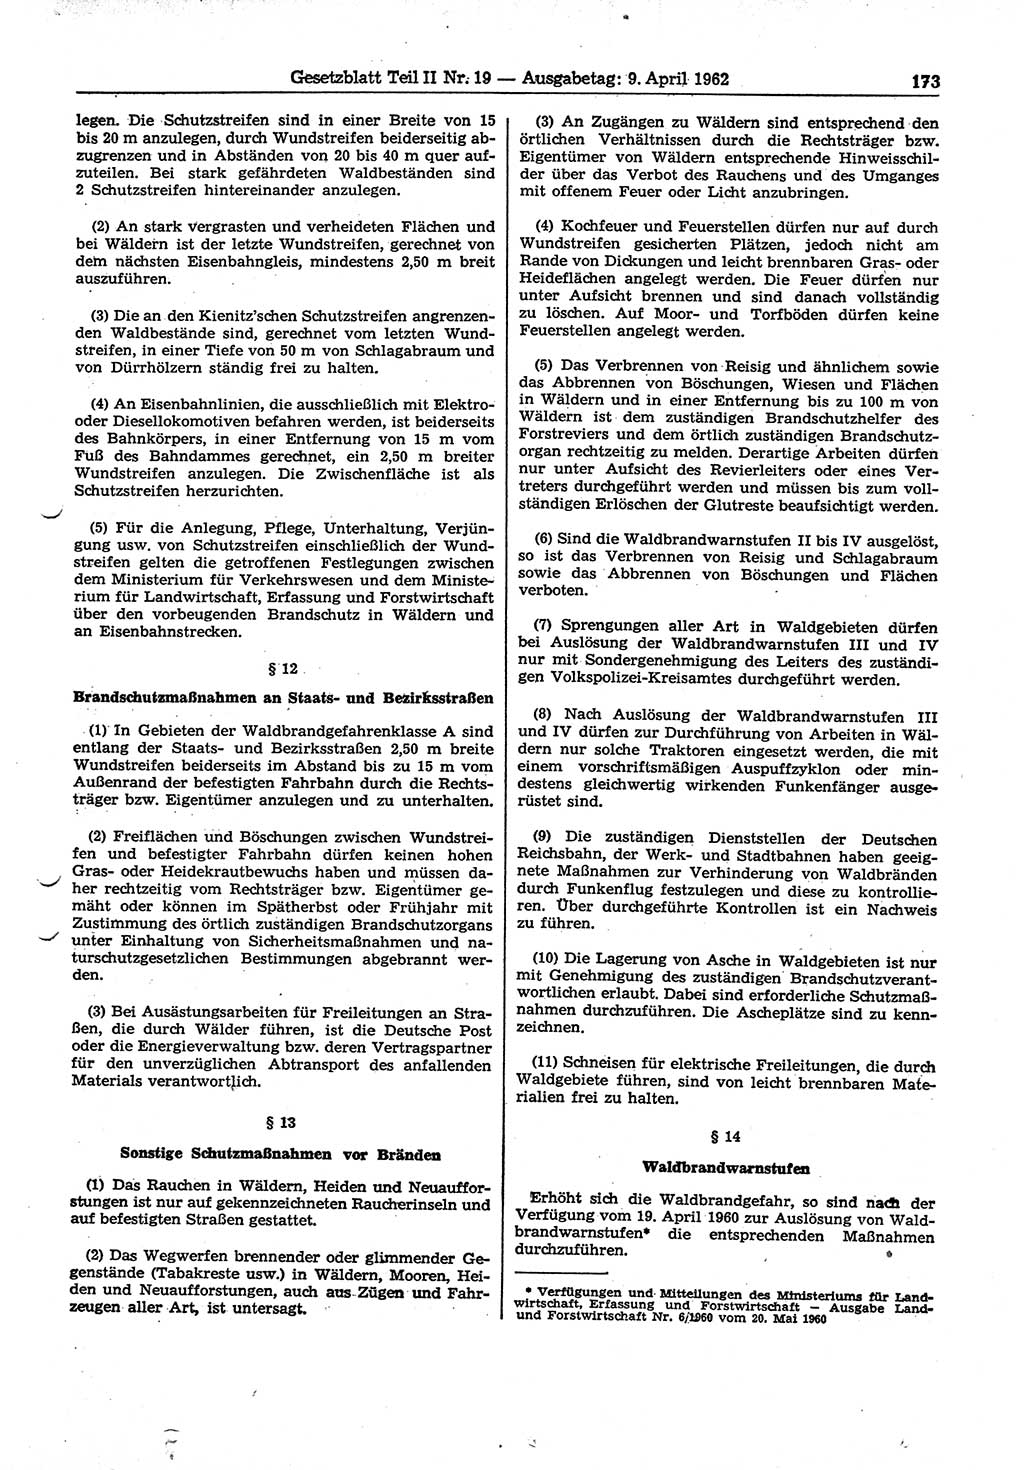 Gesetzblatt (GBl.) der Deutschen Demokratischen Republik (DDR) Teil ⅠⅠ 1962, Seite 173 (GBl. DDR ⅠⅠ 1962, S. 173)